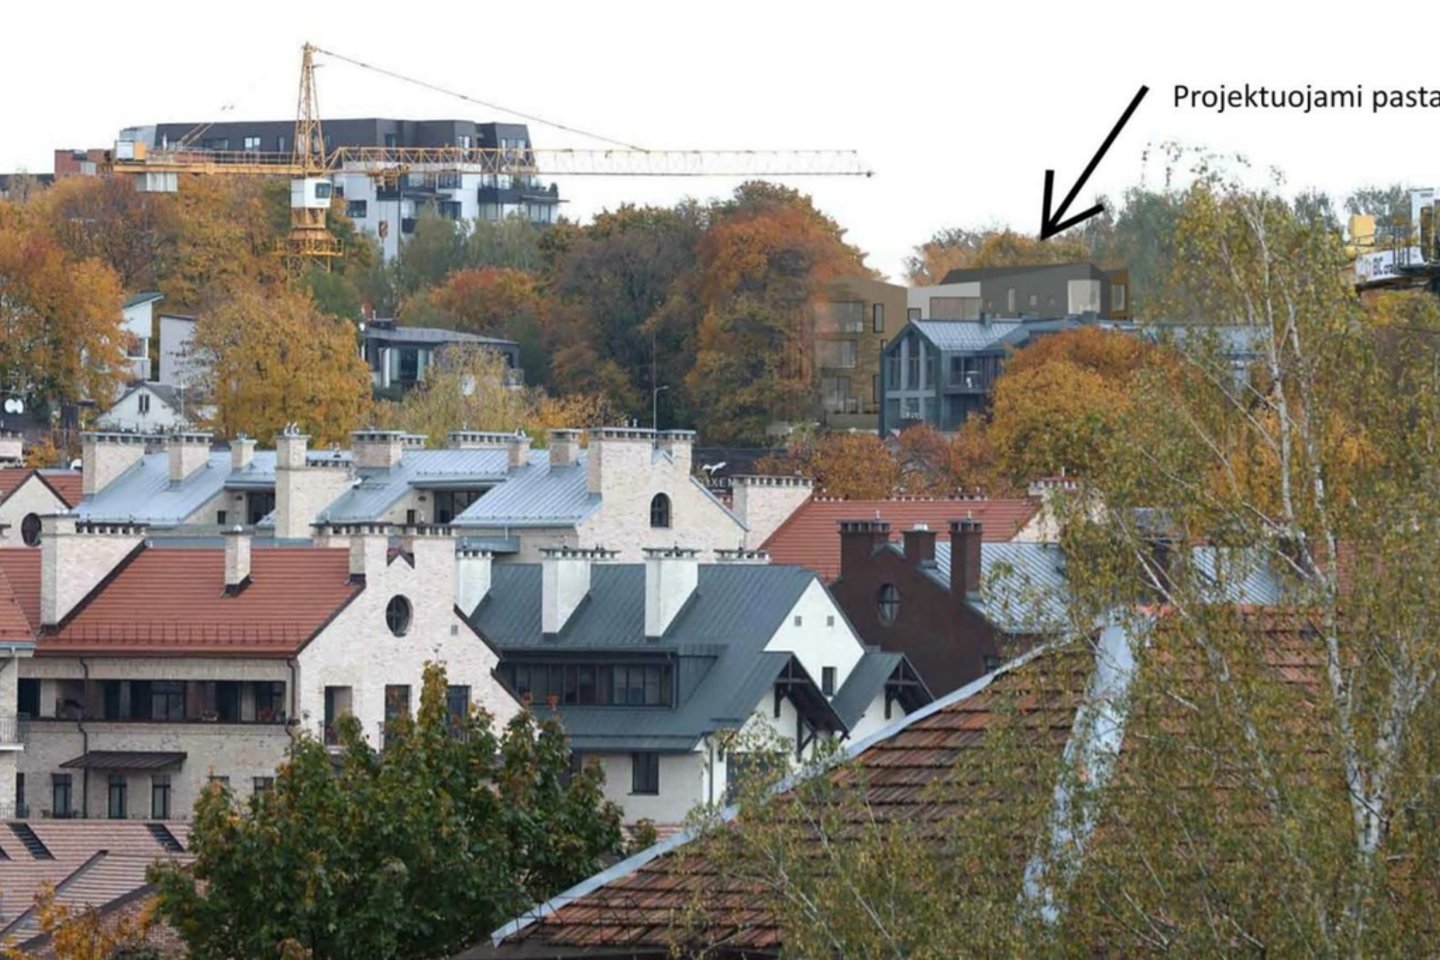 Vilniaus savivaldybės tinklapyje paviešinti trijų aukštų daugiabučio gyvenamojo namo Kreivasis skg.7, Vilniuje, projektiniai pasiūlymai. Statytojas – UAB „MRS“, architektai – architektų biuras „Architektūros linija“.<br>Vizual.